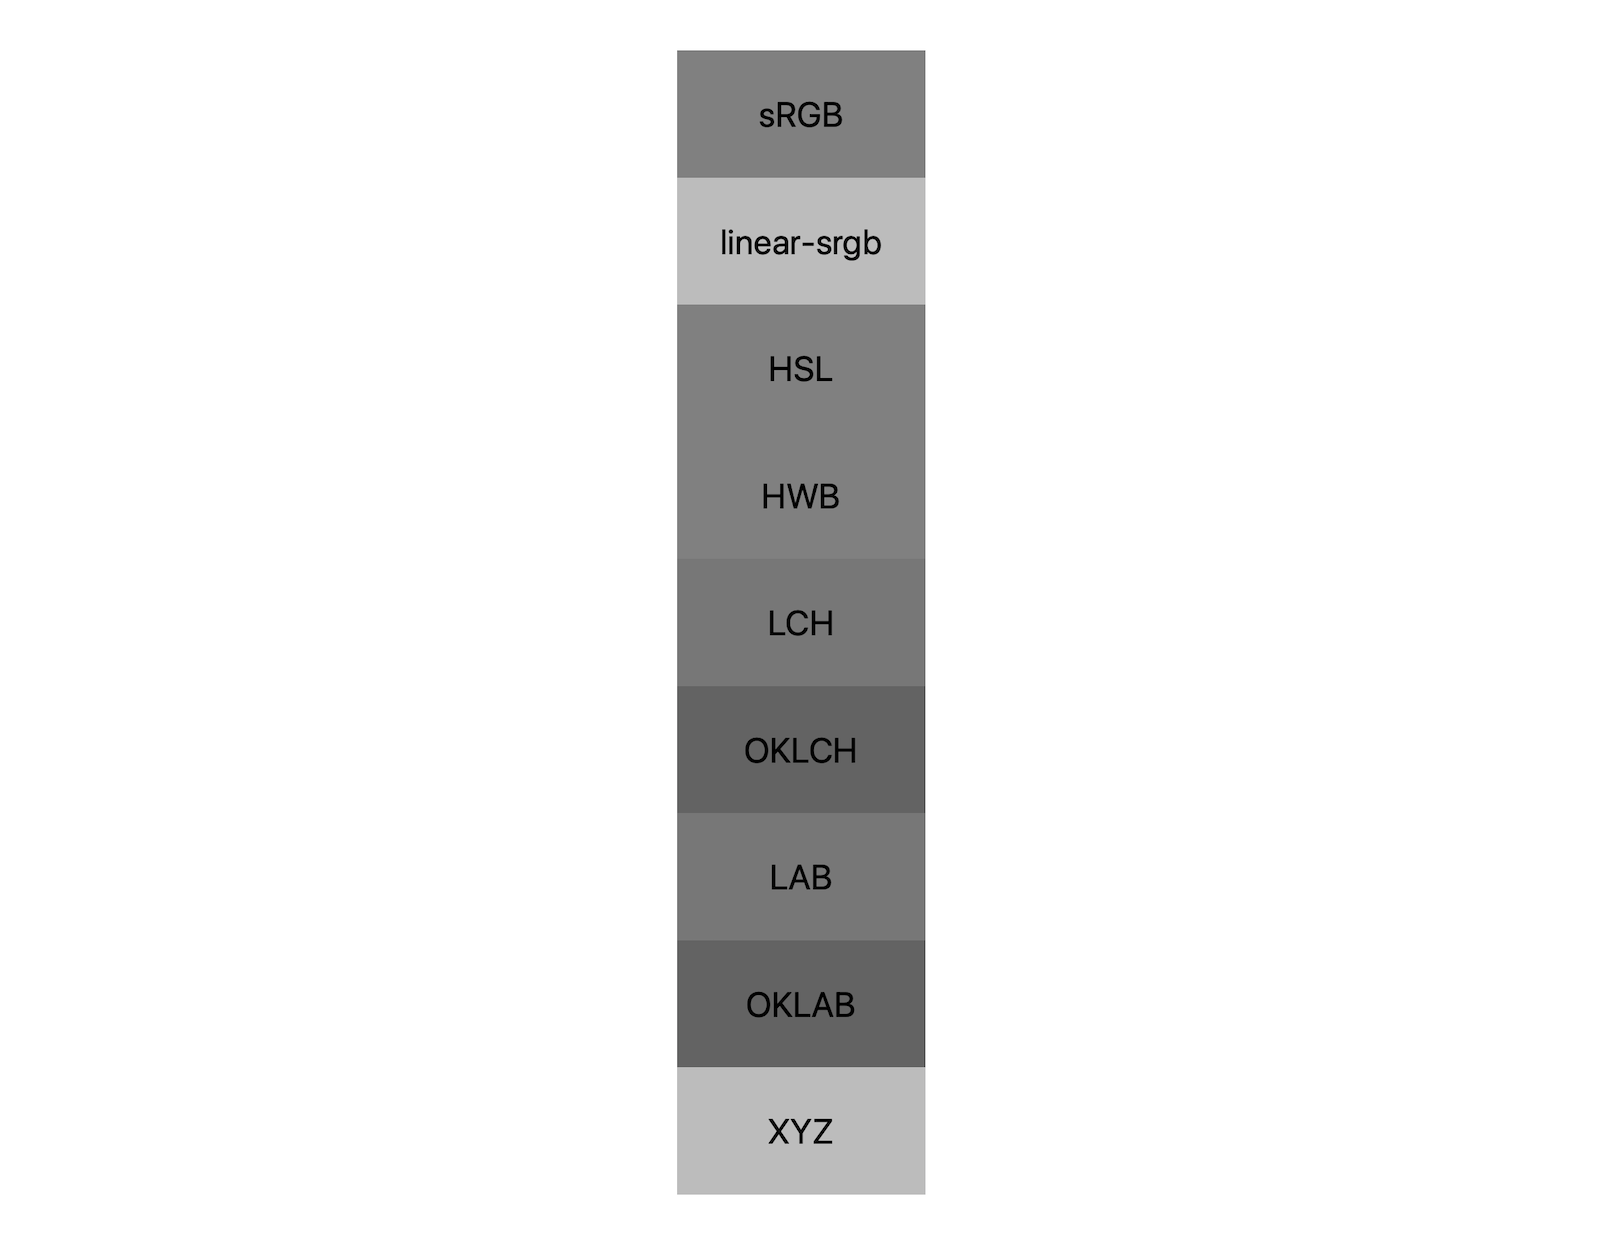 7가지 색상 공간 (srgb, linear-srgb, lch, oklch, lab, oklab, xyz)이 각각 흑백을 혼합한 결과를 보여줍니다. 약 5가지의 서로 다른 음영이 표시되어 각 색공간이 회색과 다르게 혼합된다는 것을 보여줍니다.